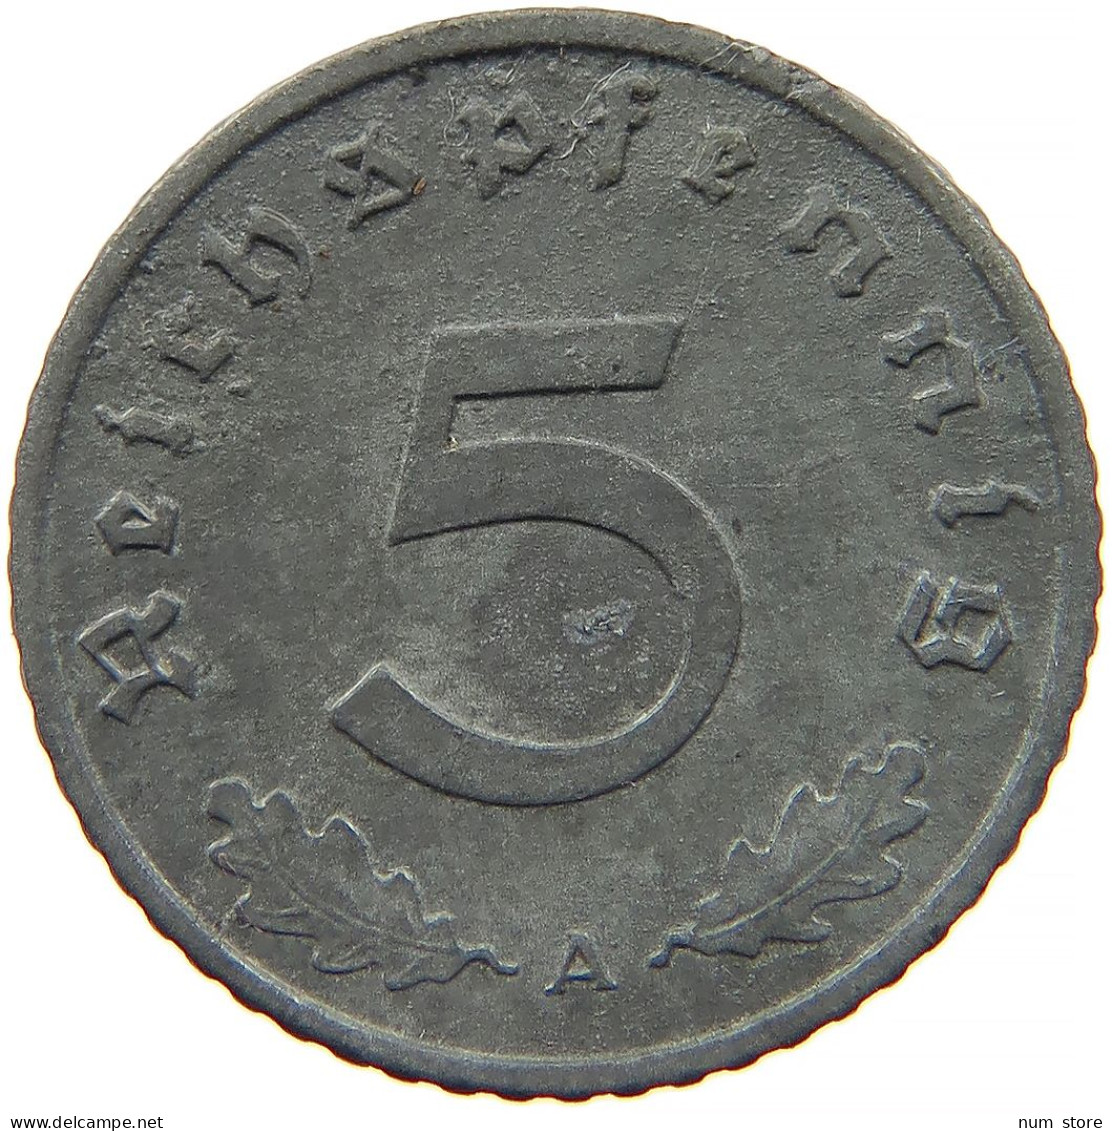 GERMANY 5 REICHSPFENNIG 1942 A #s091 0959 - 5 Reichspfennig